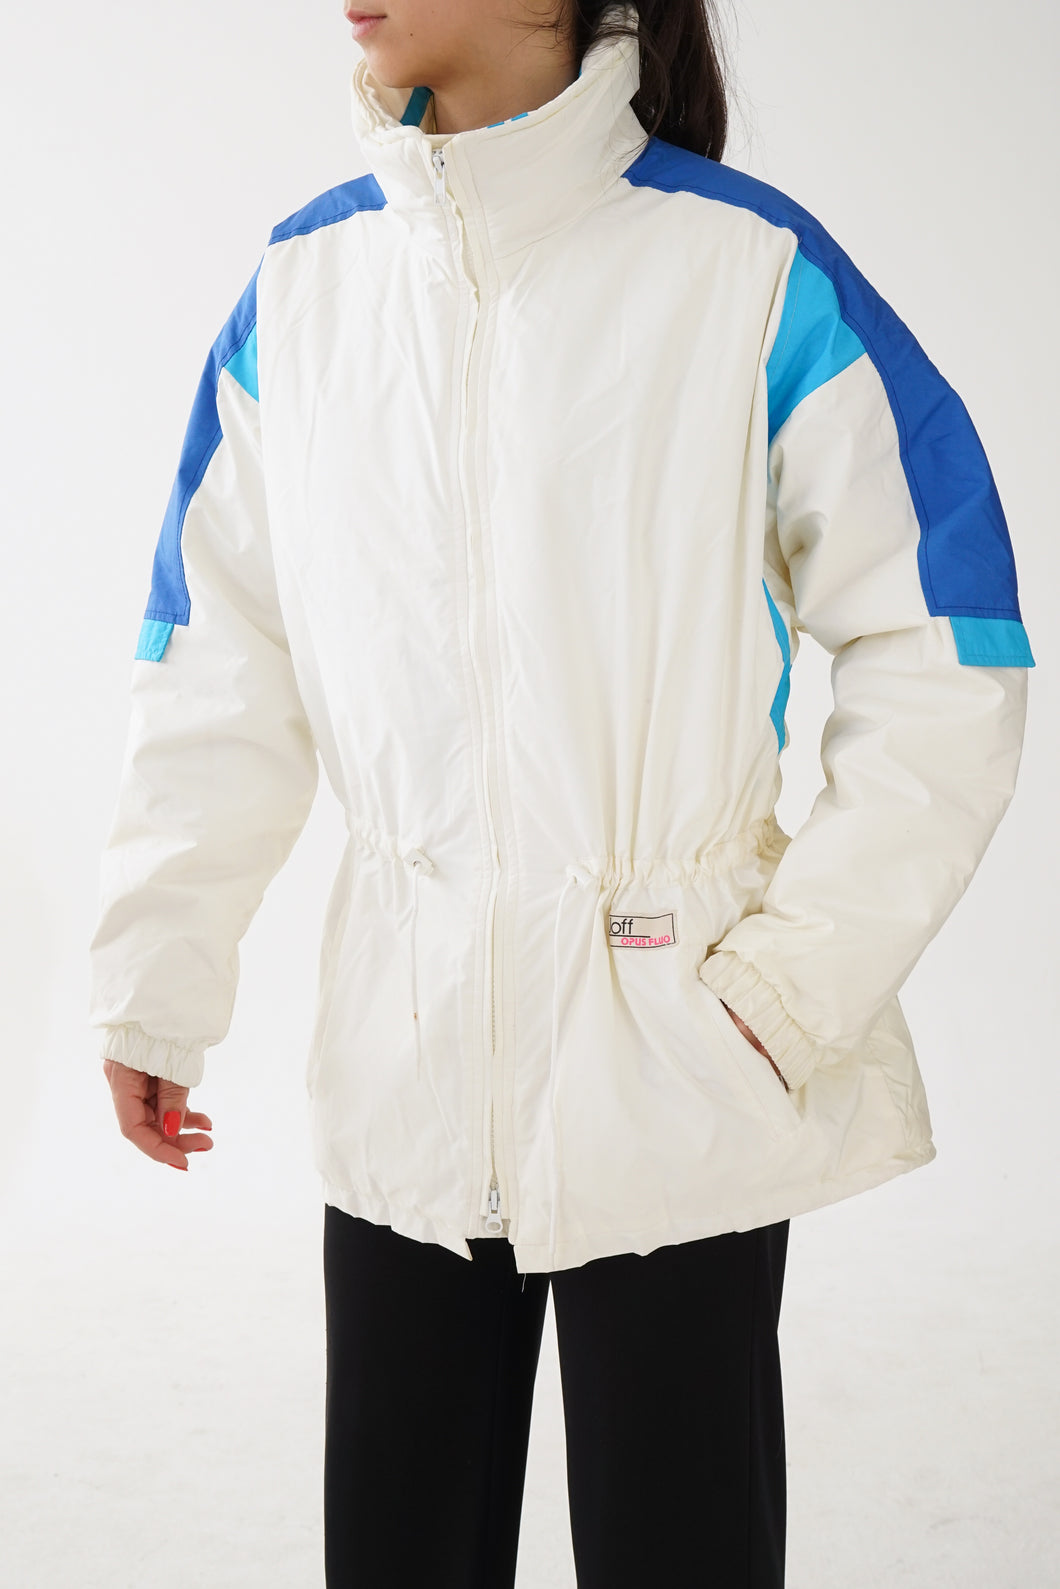 Manteau rétro Joff comme neuf blanc avec accent bleu unisexe taille 42 (M-L)